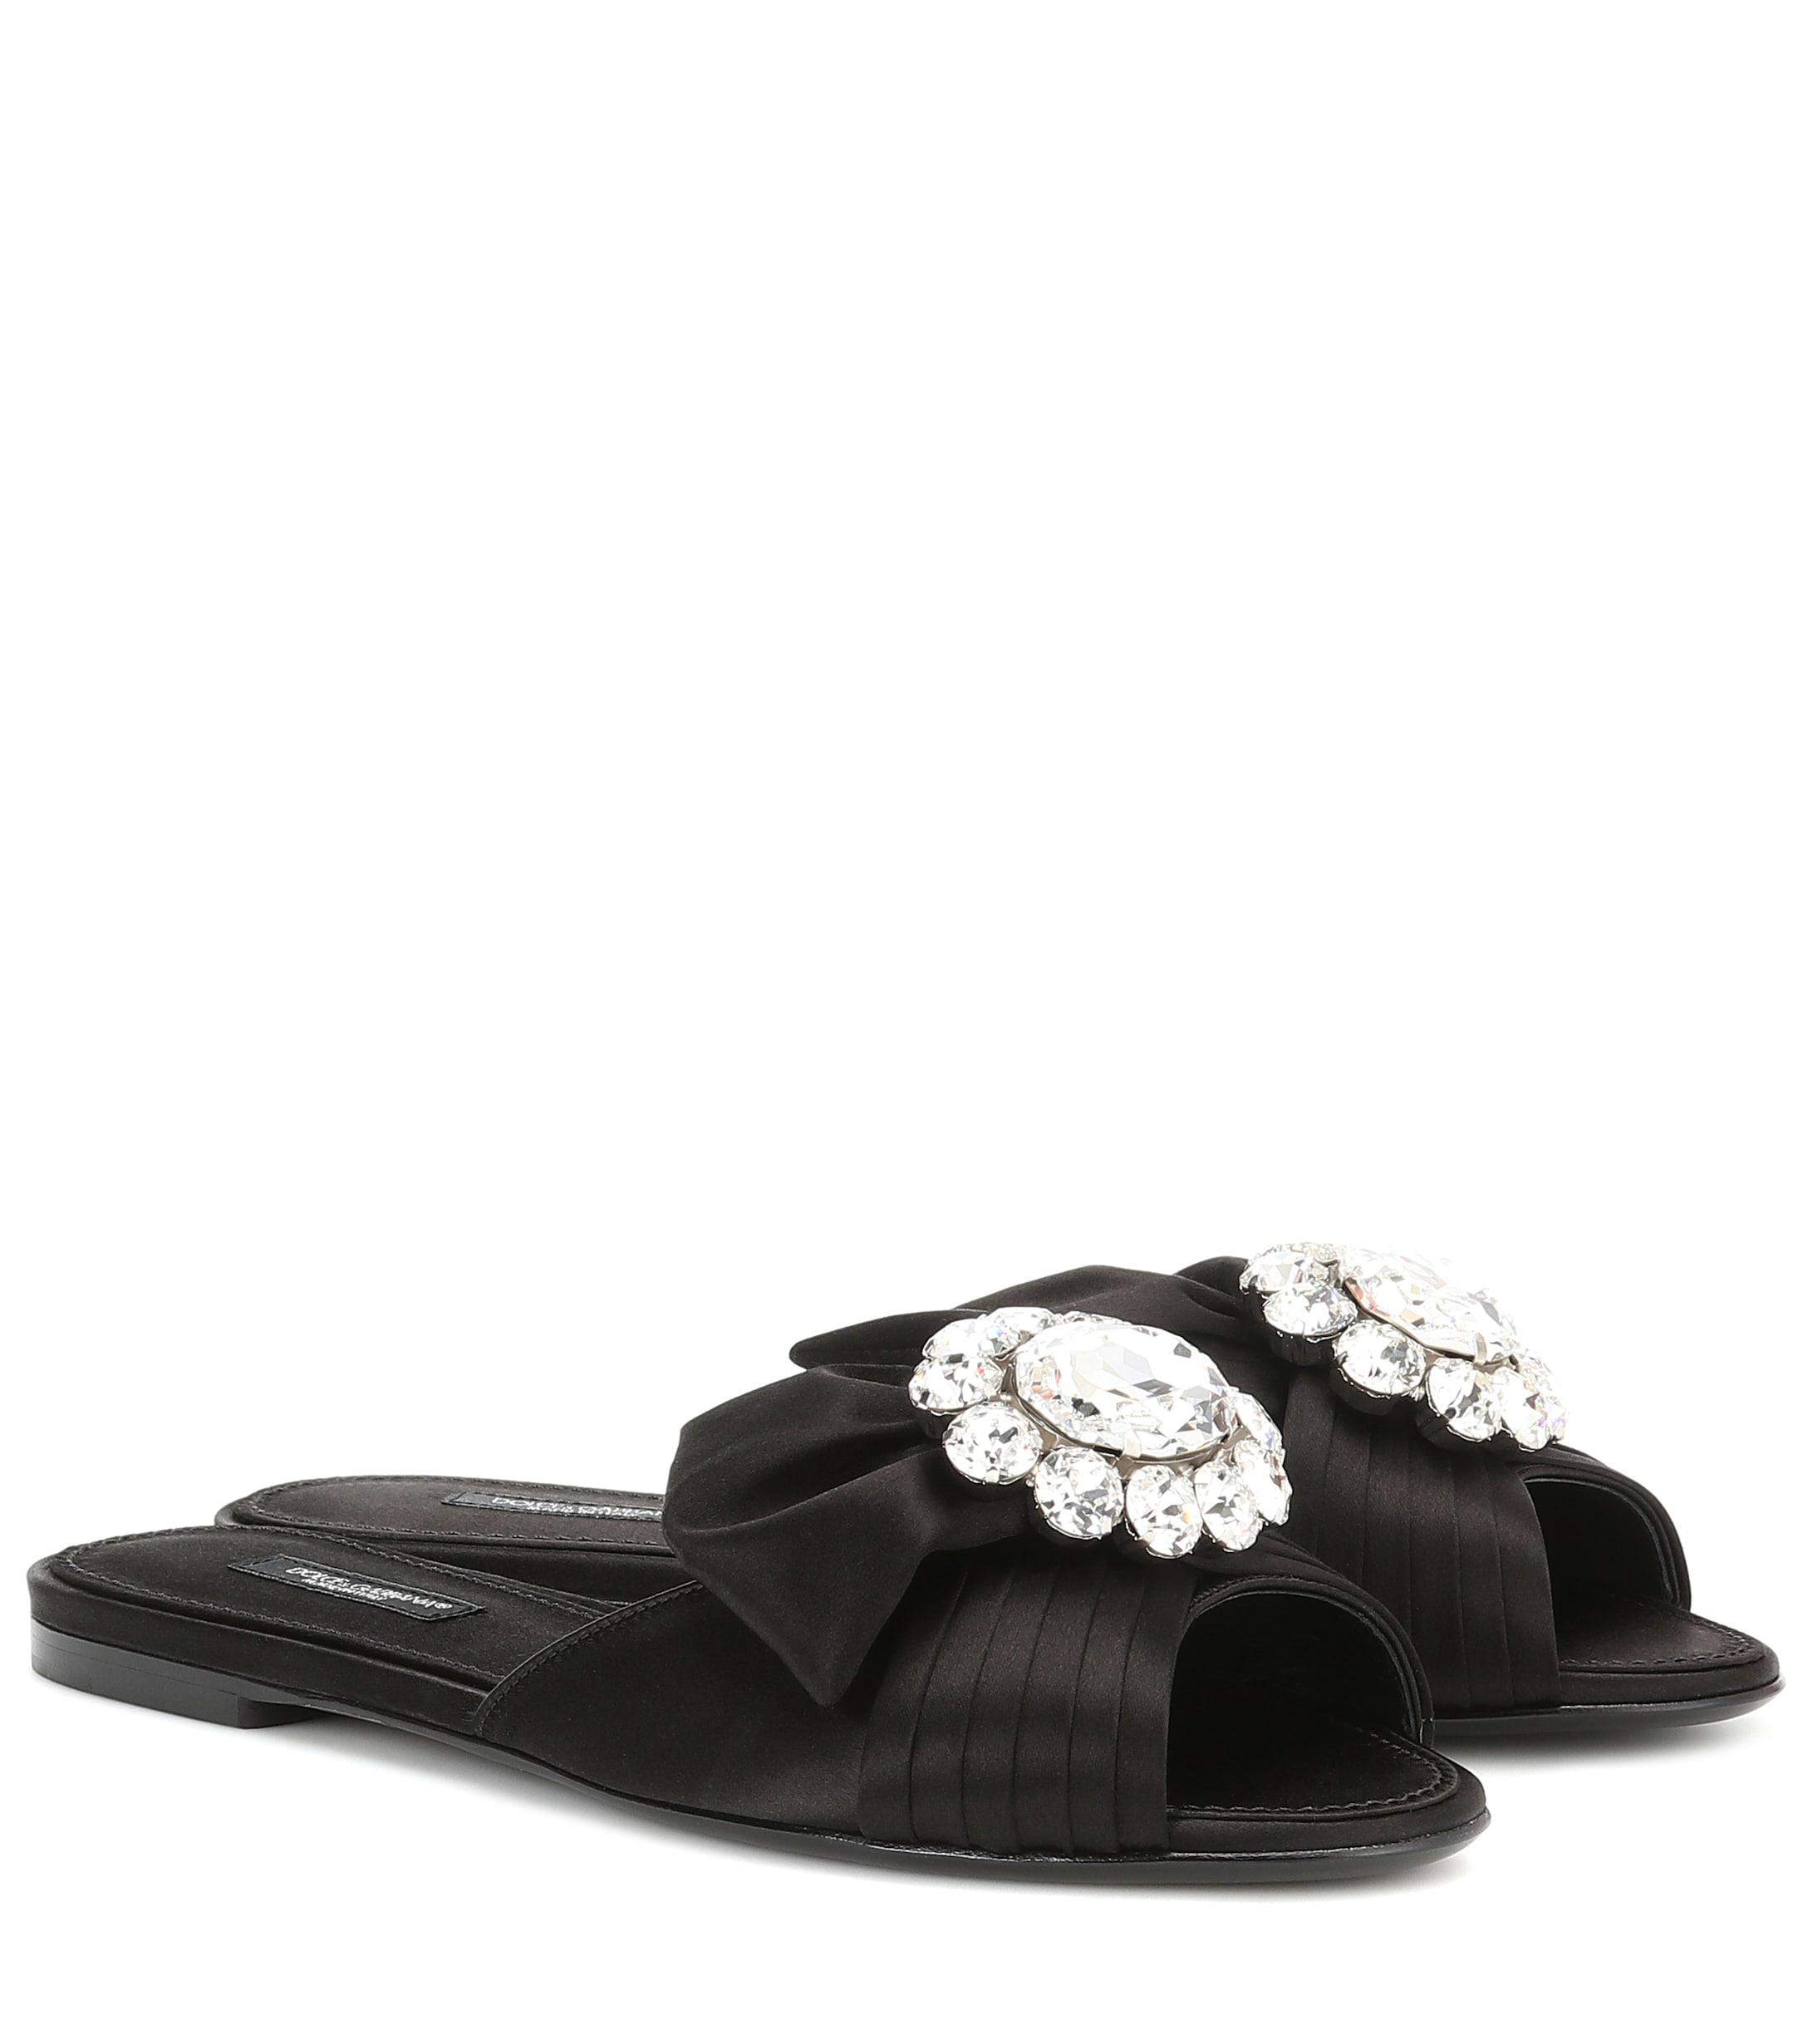 Dolce & Gabbana Embellished Satin Slides in Black - Save 42% - Lyst